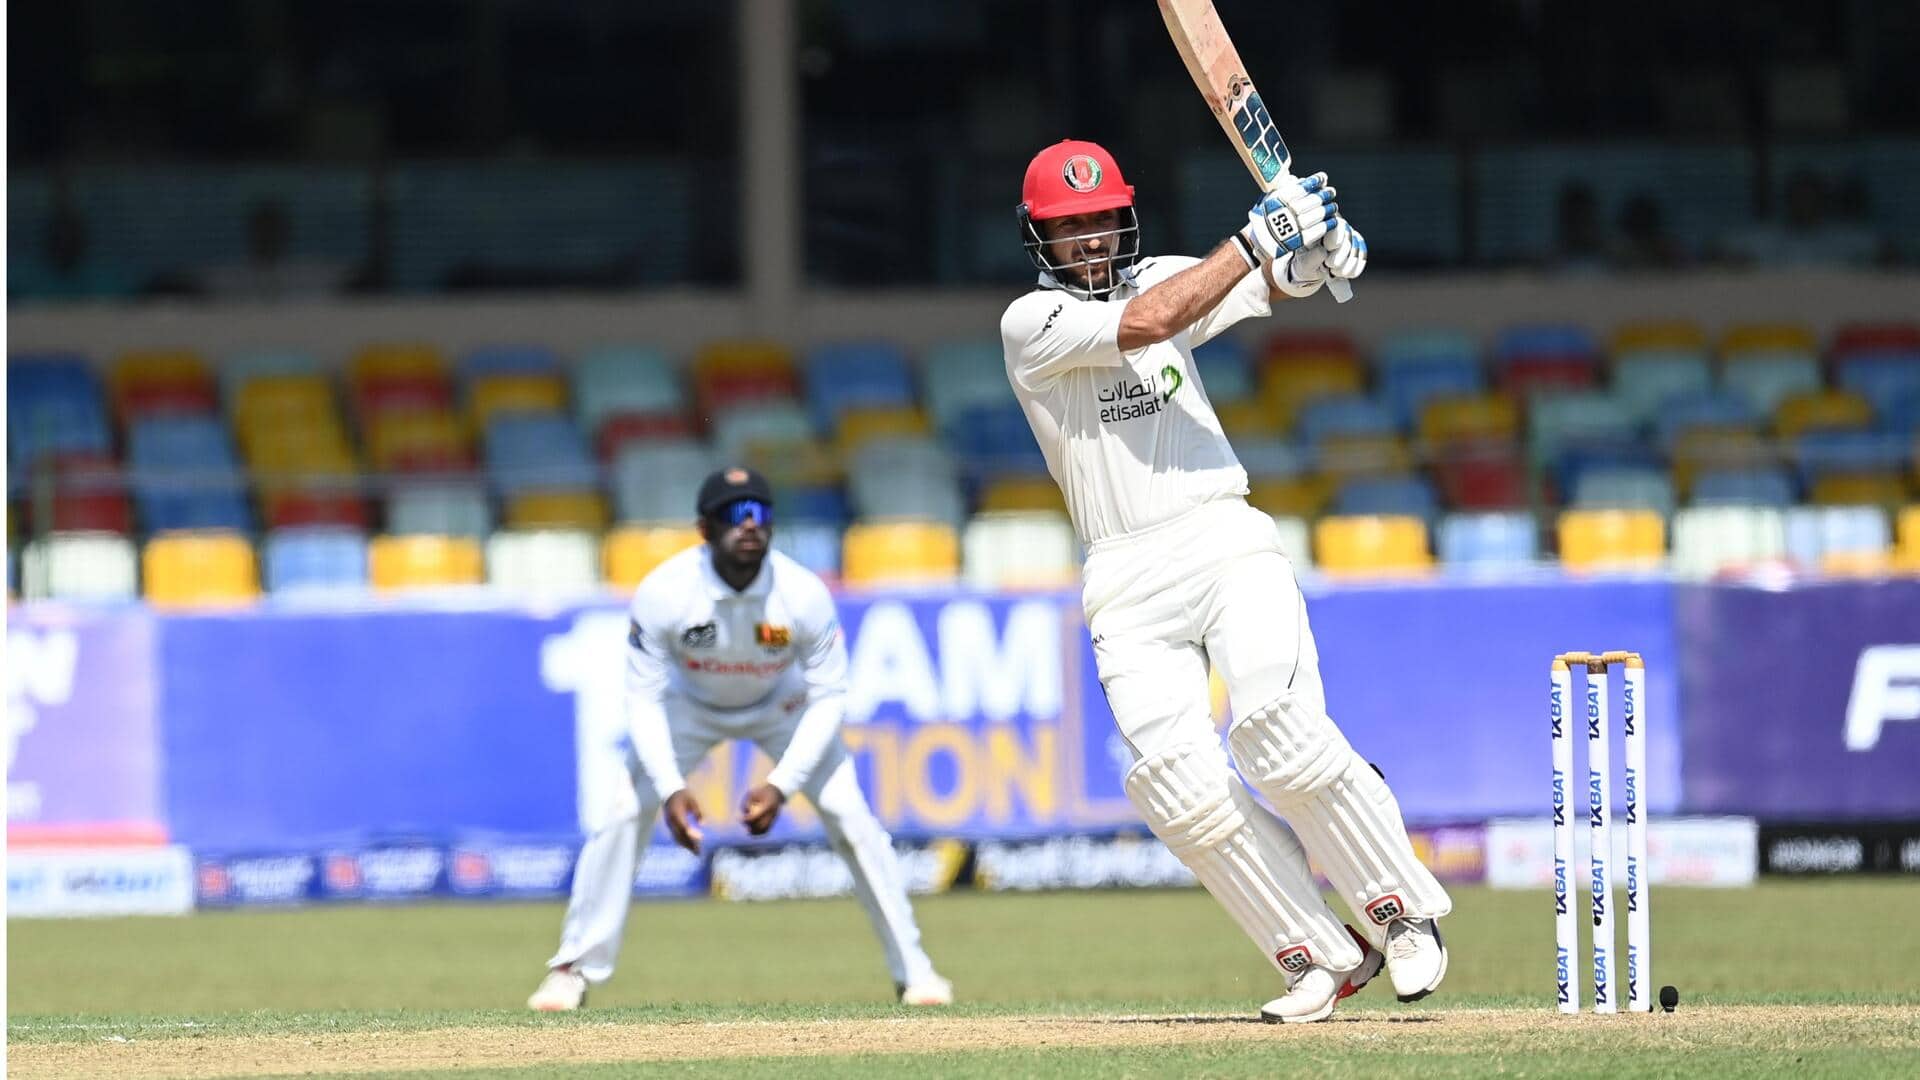 रहमत शाह अपने दूसरे शतक से चूके, सर्वाधिक टेस्ट रन बनाने वाले अफगानी बल्लेबाज बने